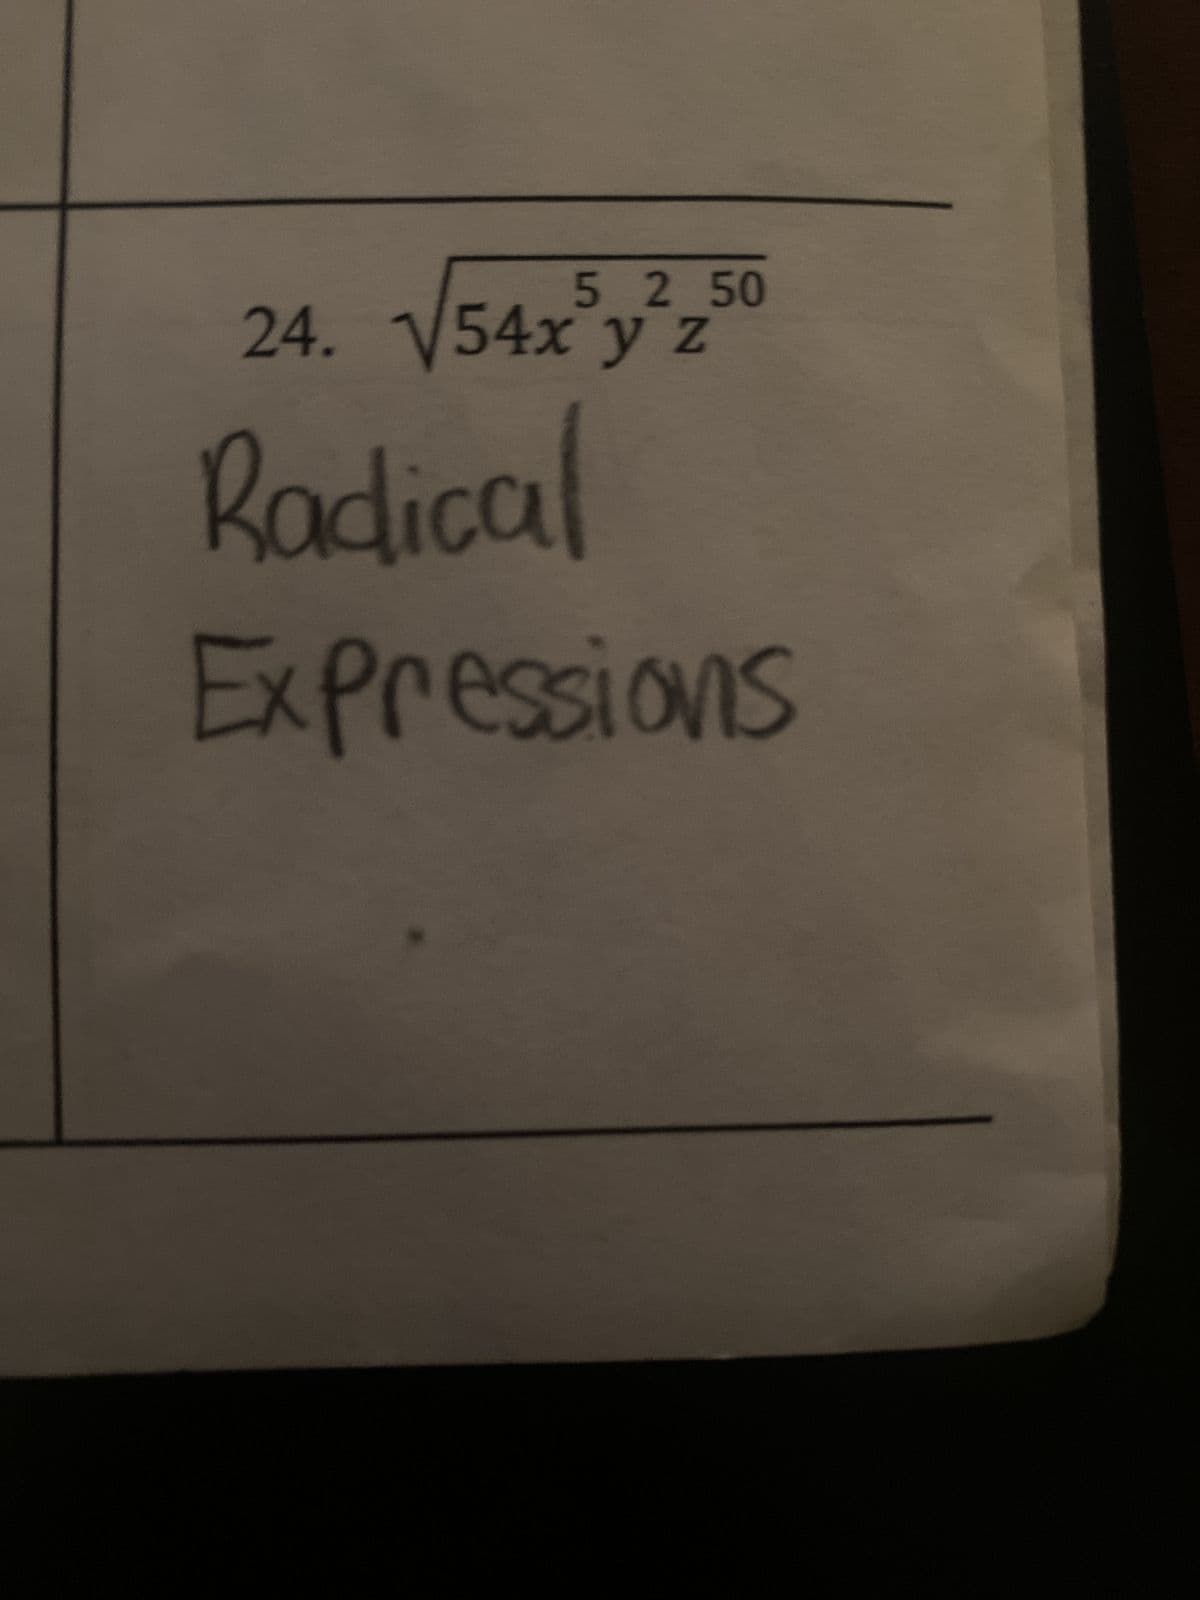 5 2 50
24. √54x y z
Radical
Expressions